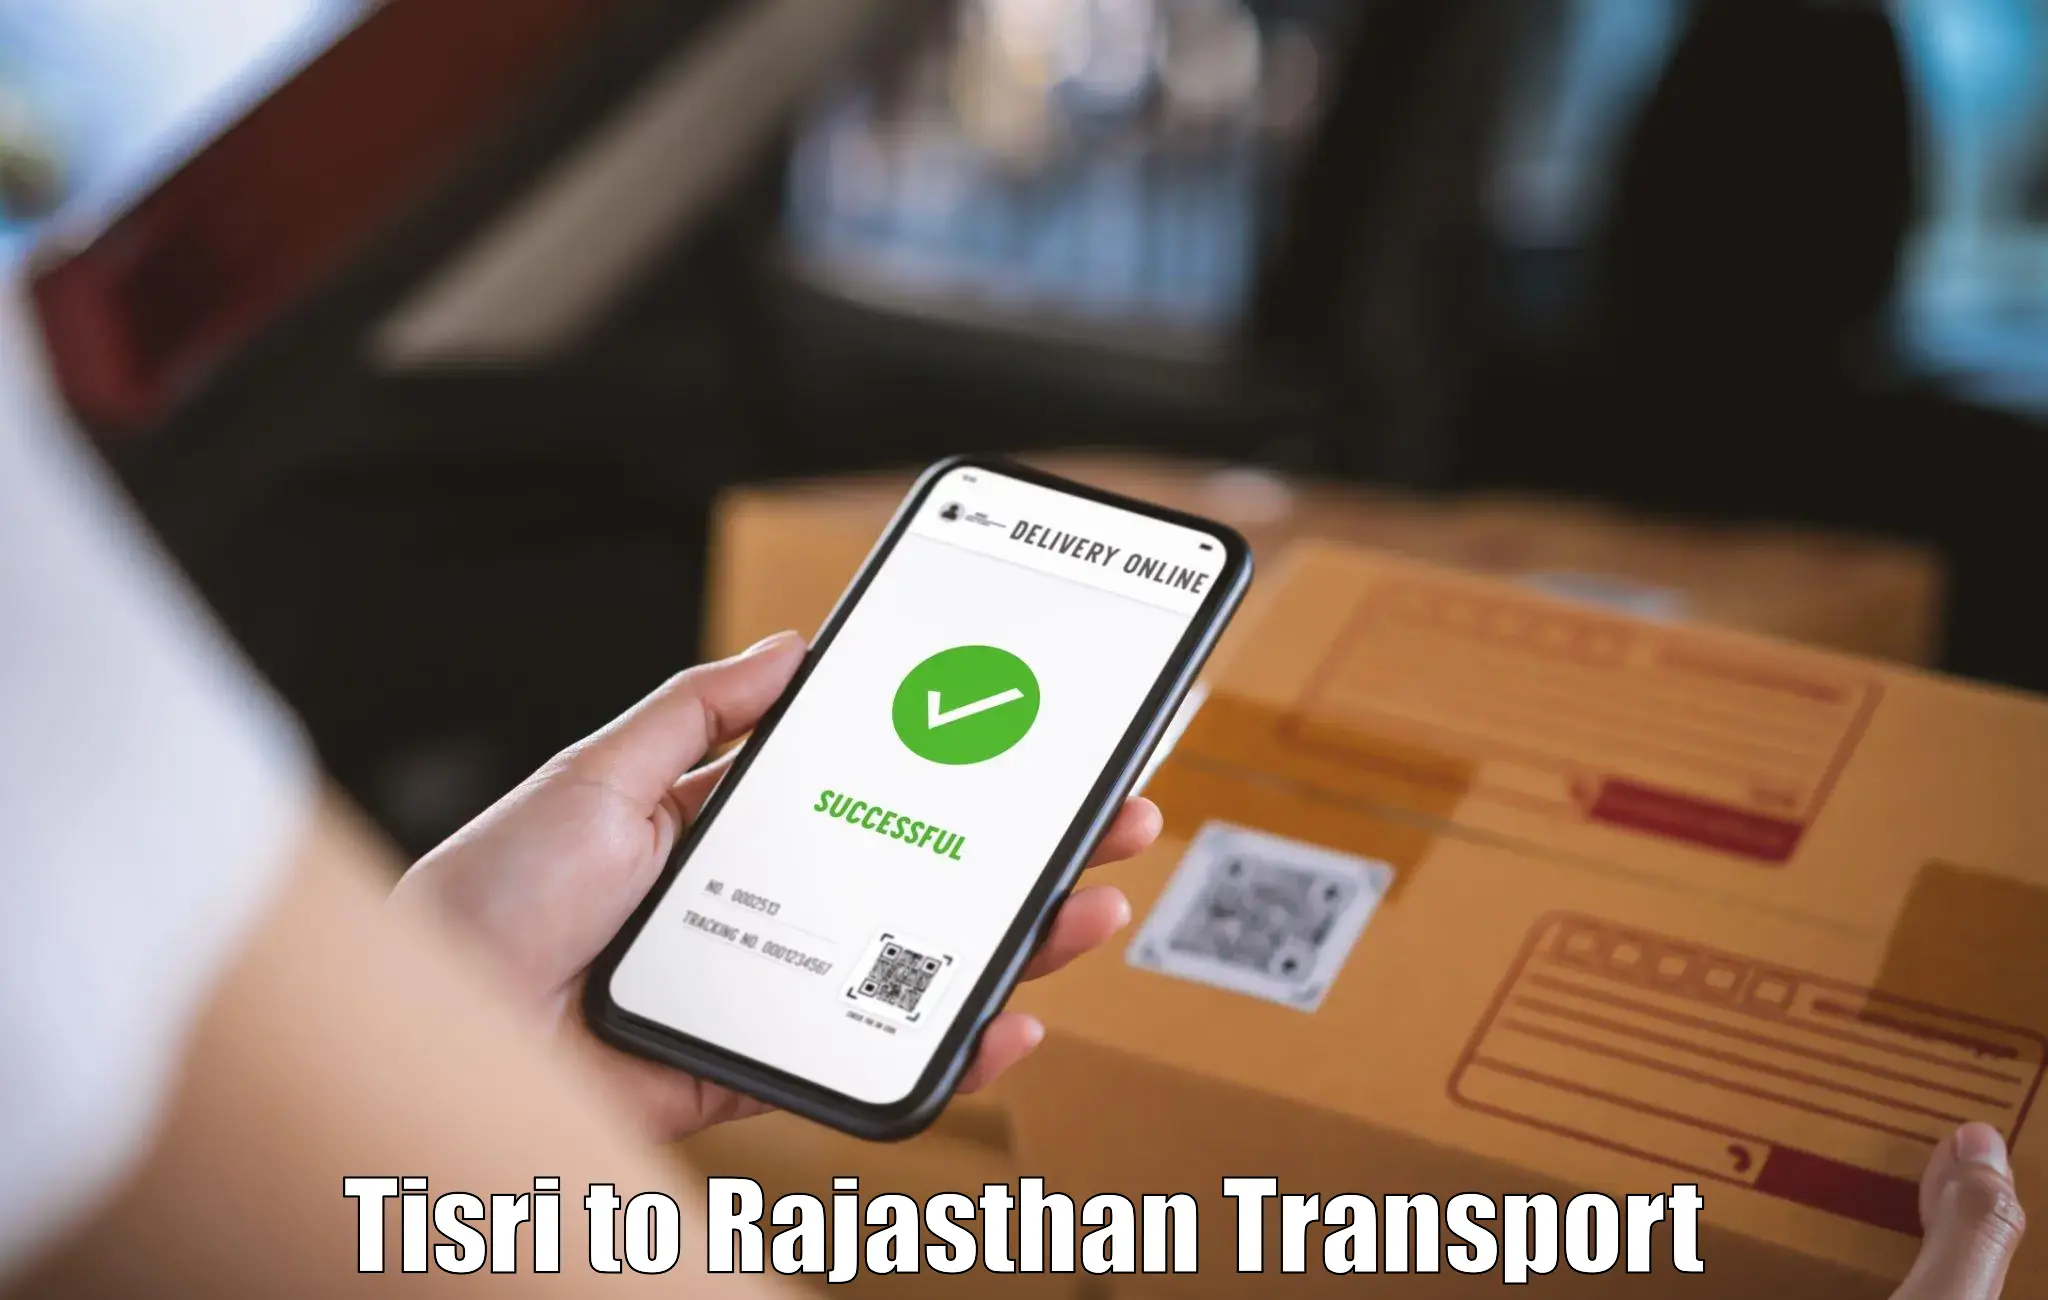 Goods delivery service Tisri to Mandphiya